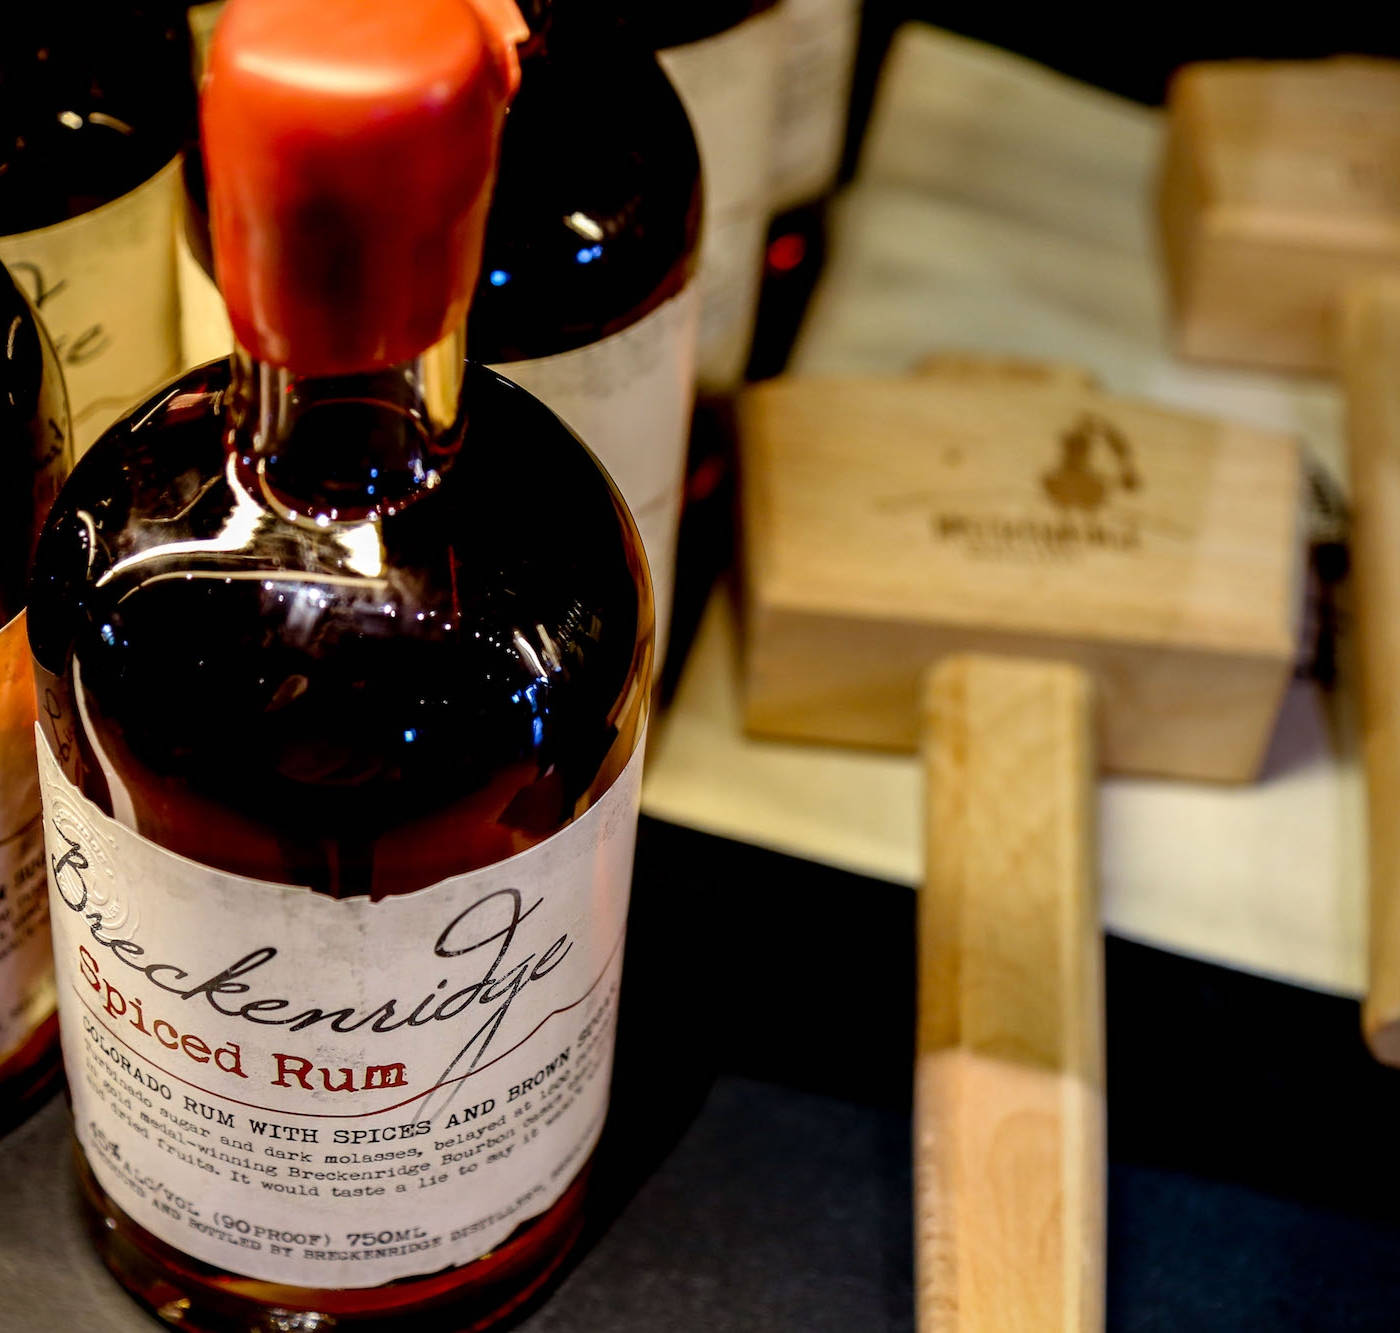 Exquisite Spiced Rum Bottle from Breckenridge Distillery Wallpaper